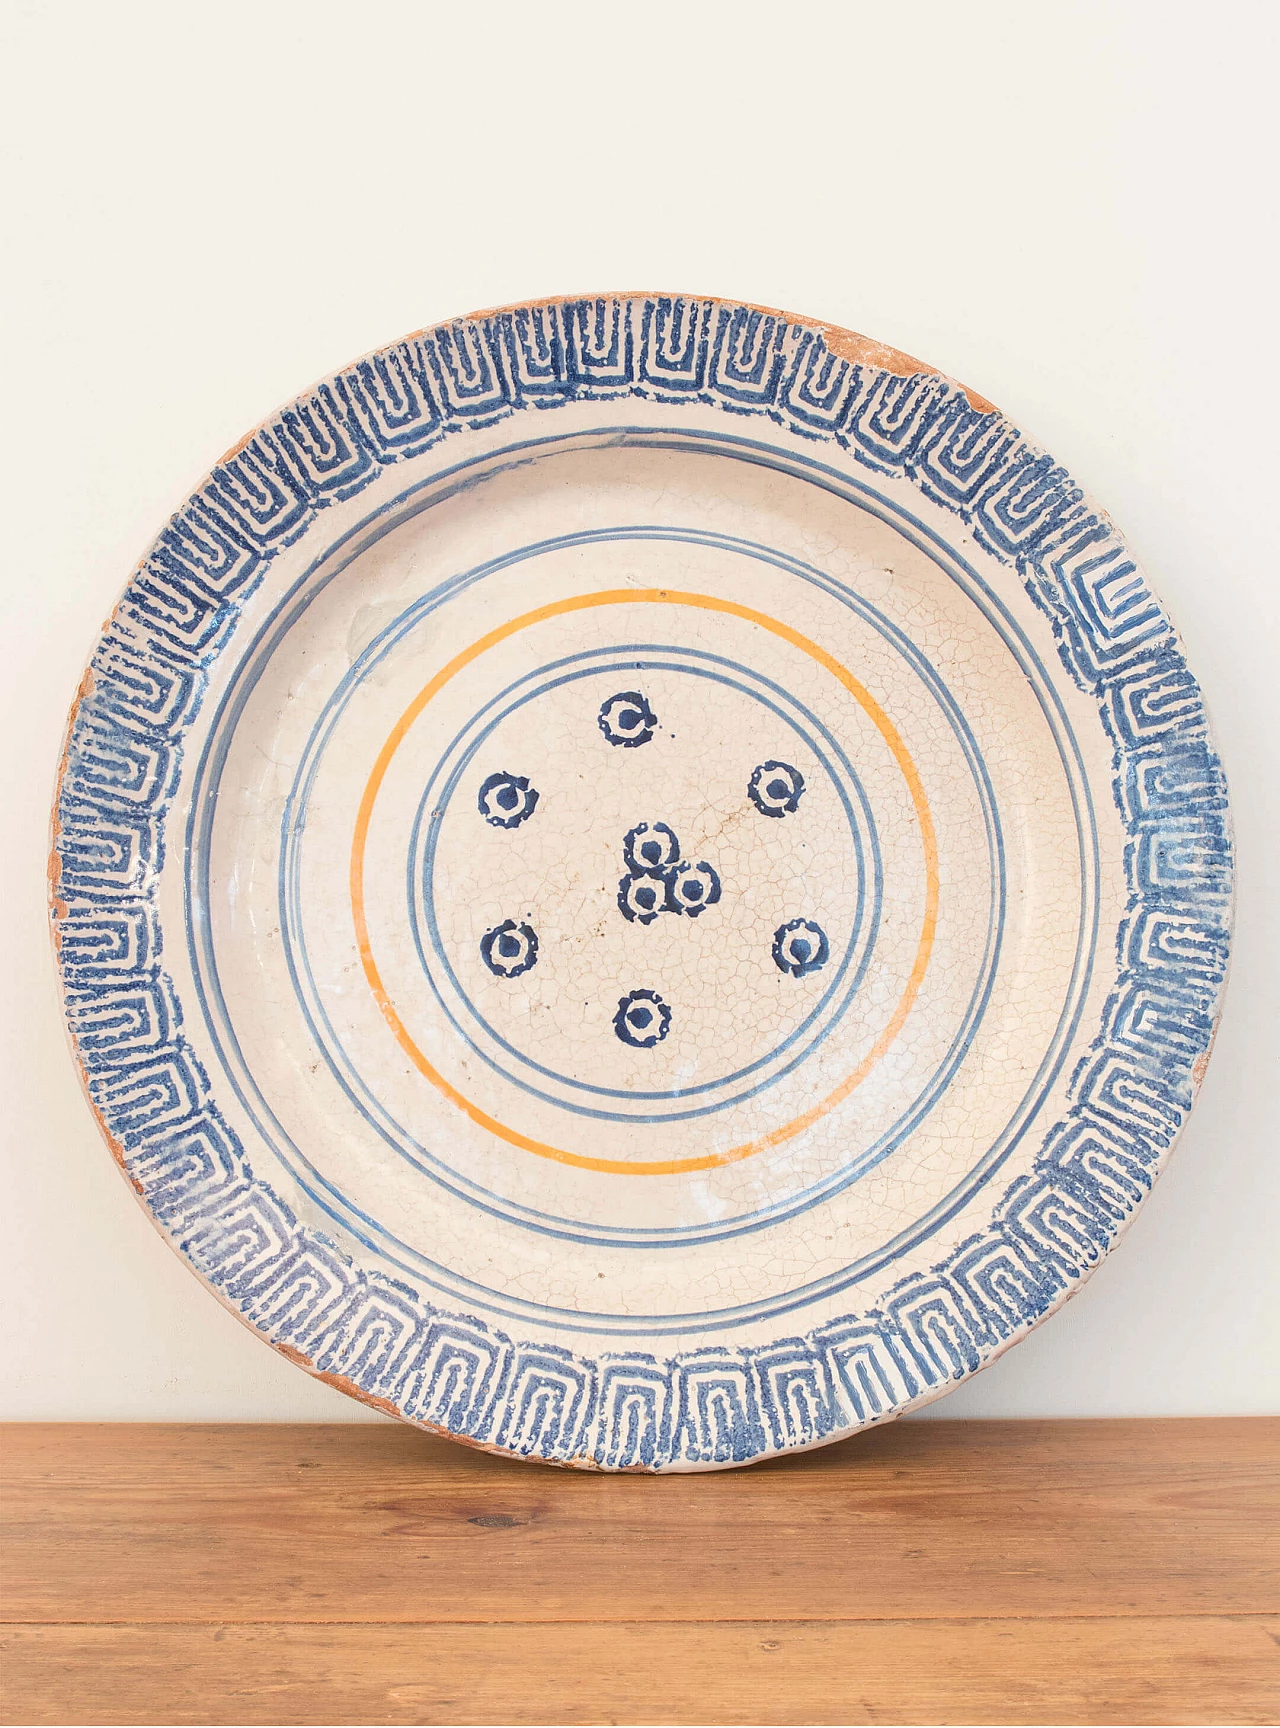 Laterza ceramic plate, Puglia region, 18th century 1084706